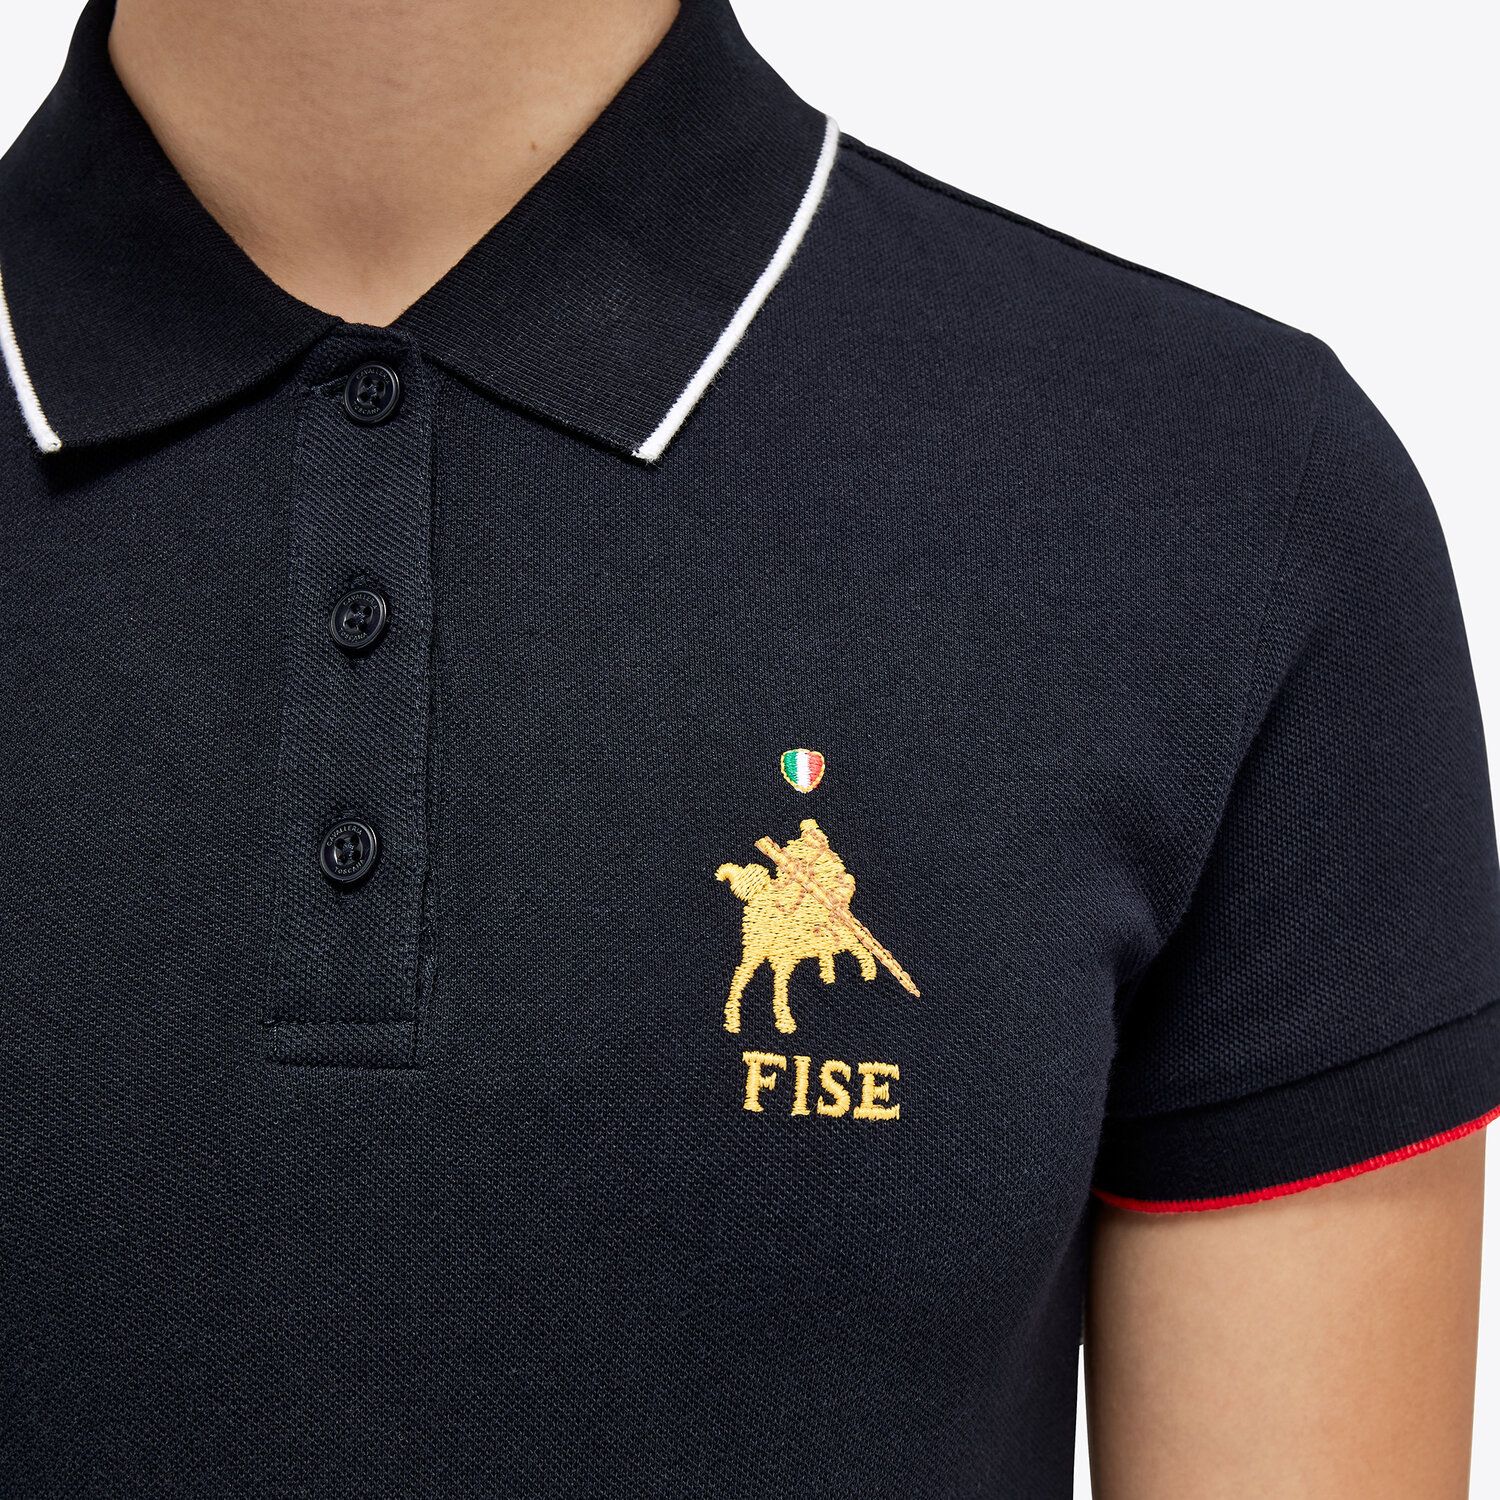 Cavalleria Toscana FISE polo shirt for girls in piqué cotton NAVY-5